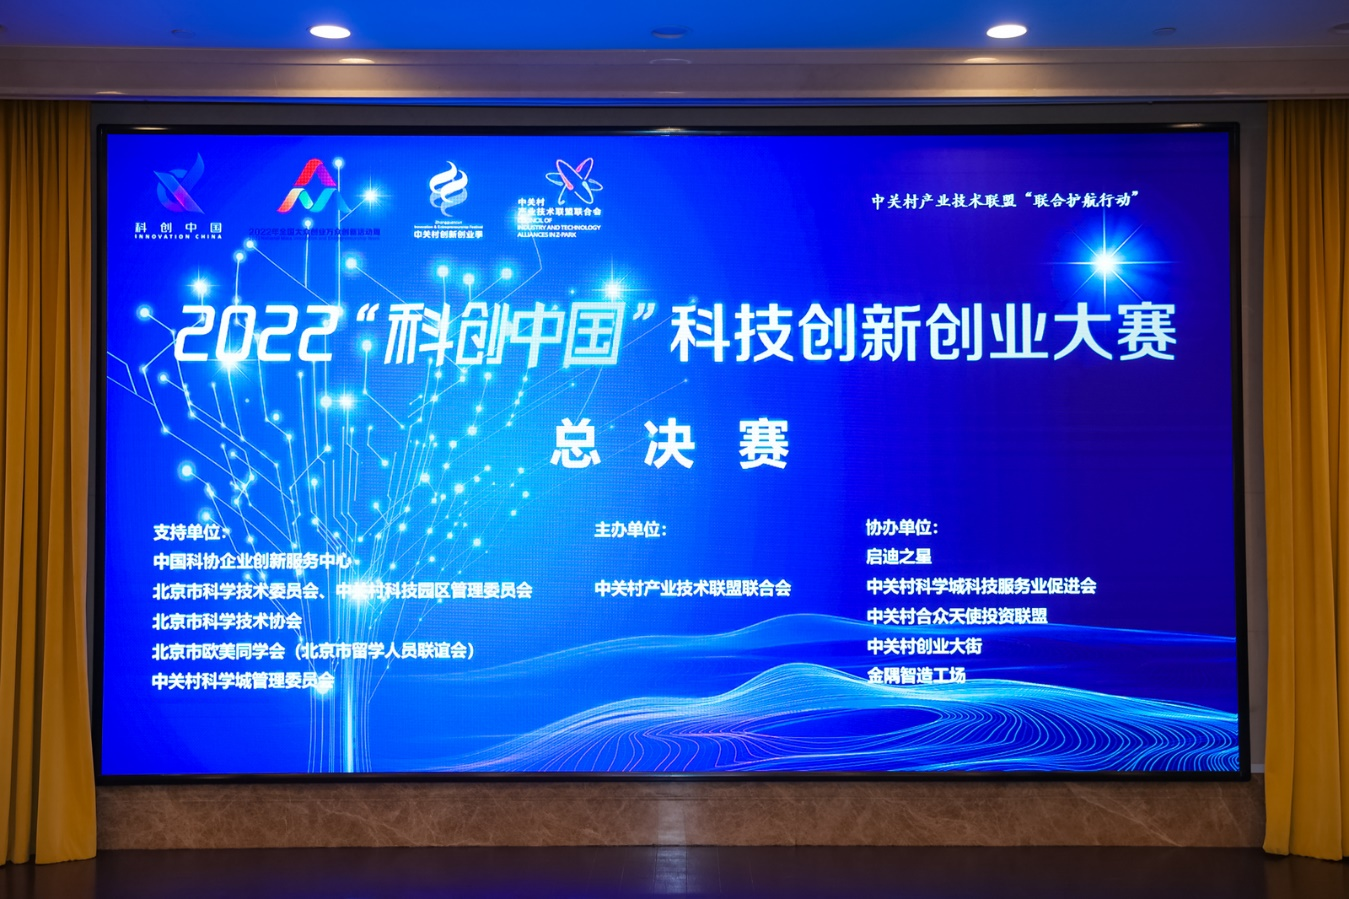 2022“科创中国”科技创新创业大赛圆满落幕